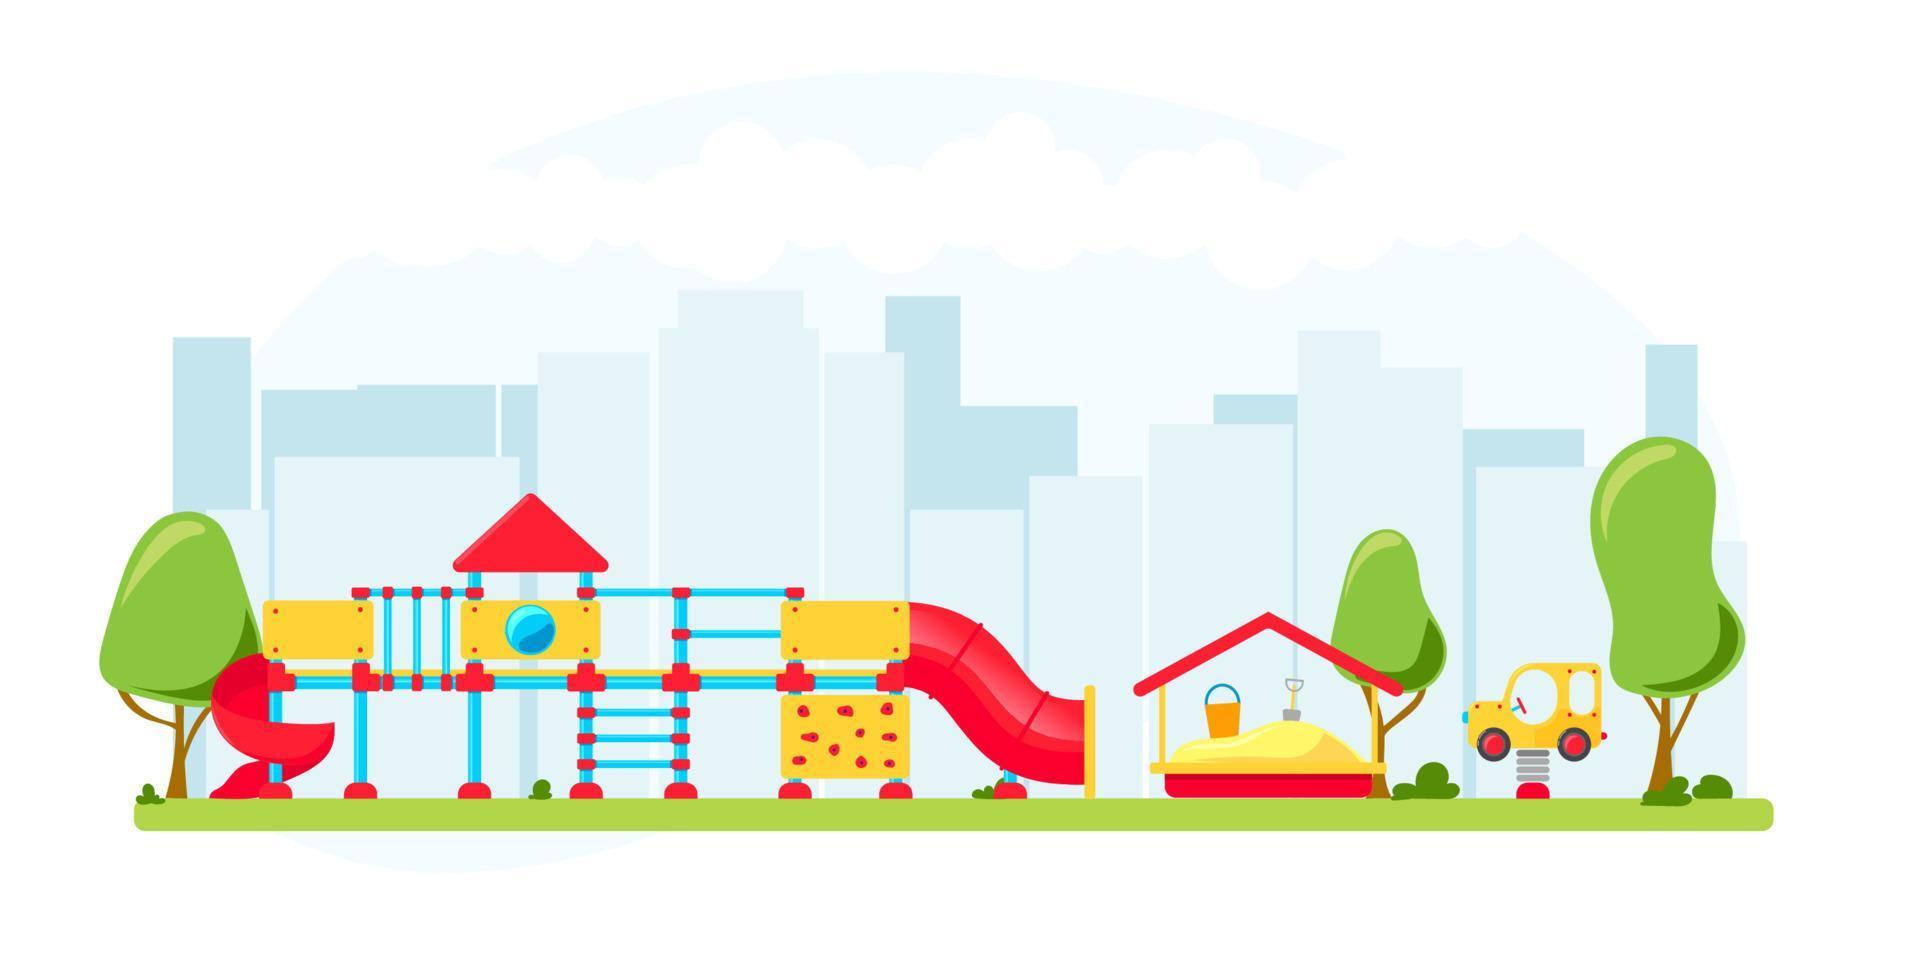 parque infantil. conjunto de elementos de equipo de juego. concepto de parque de la ciudad. ilustración vectorial vector